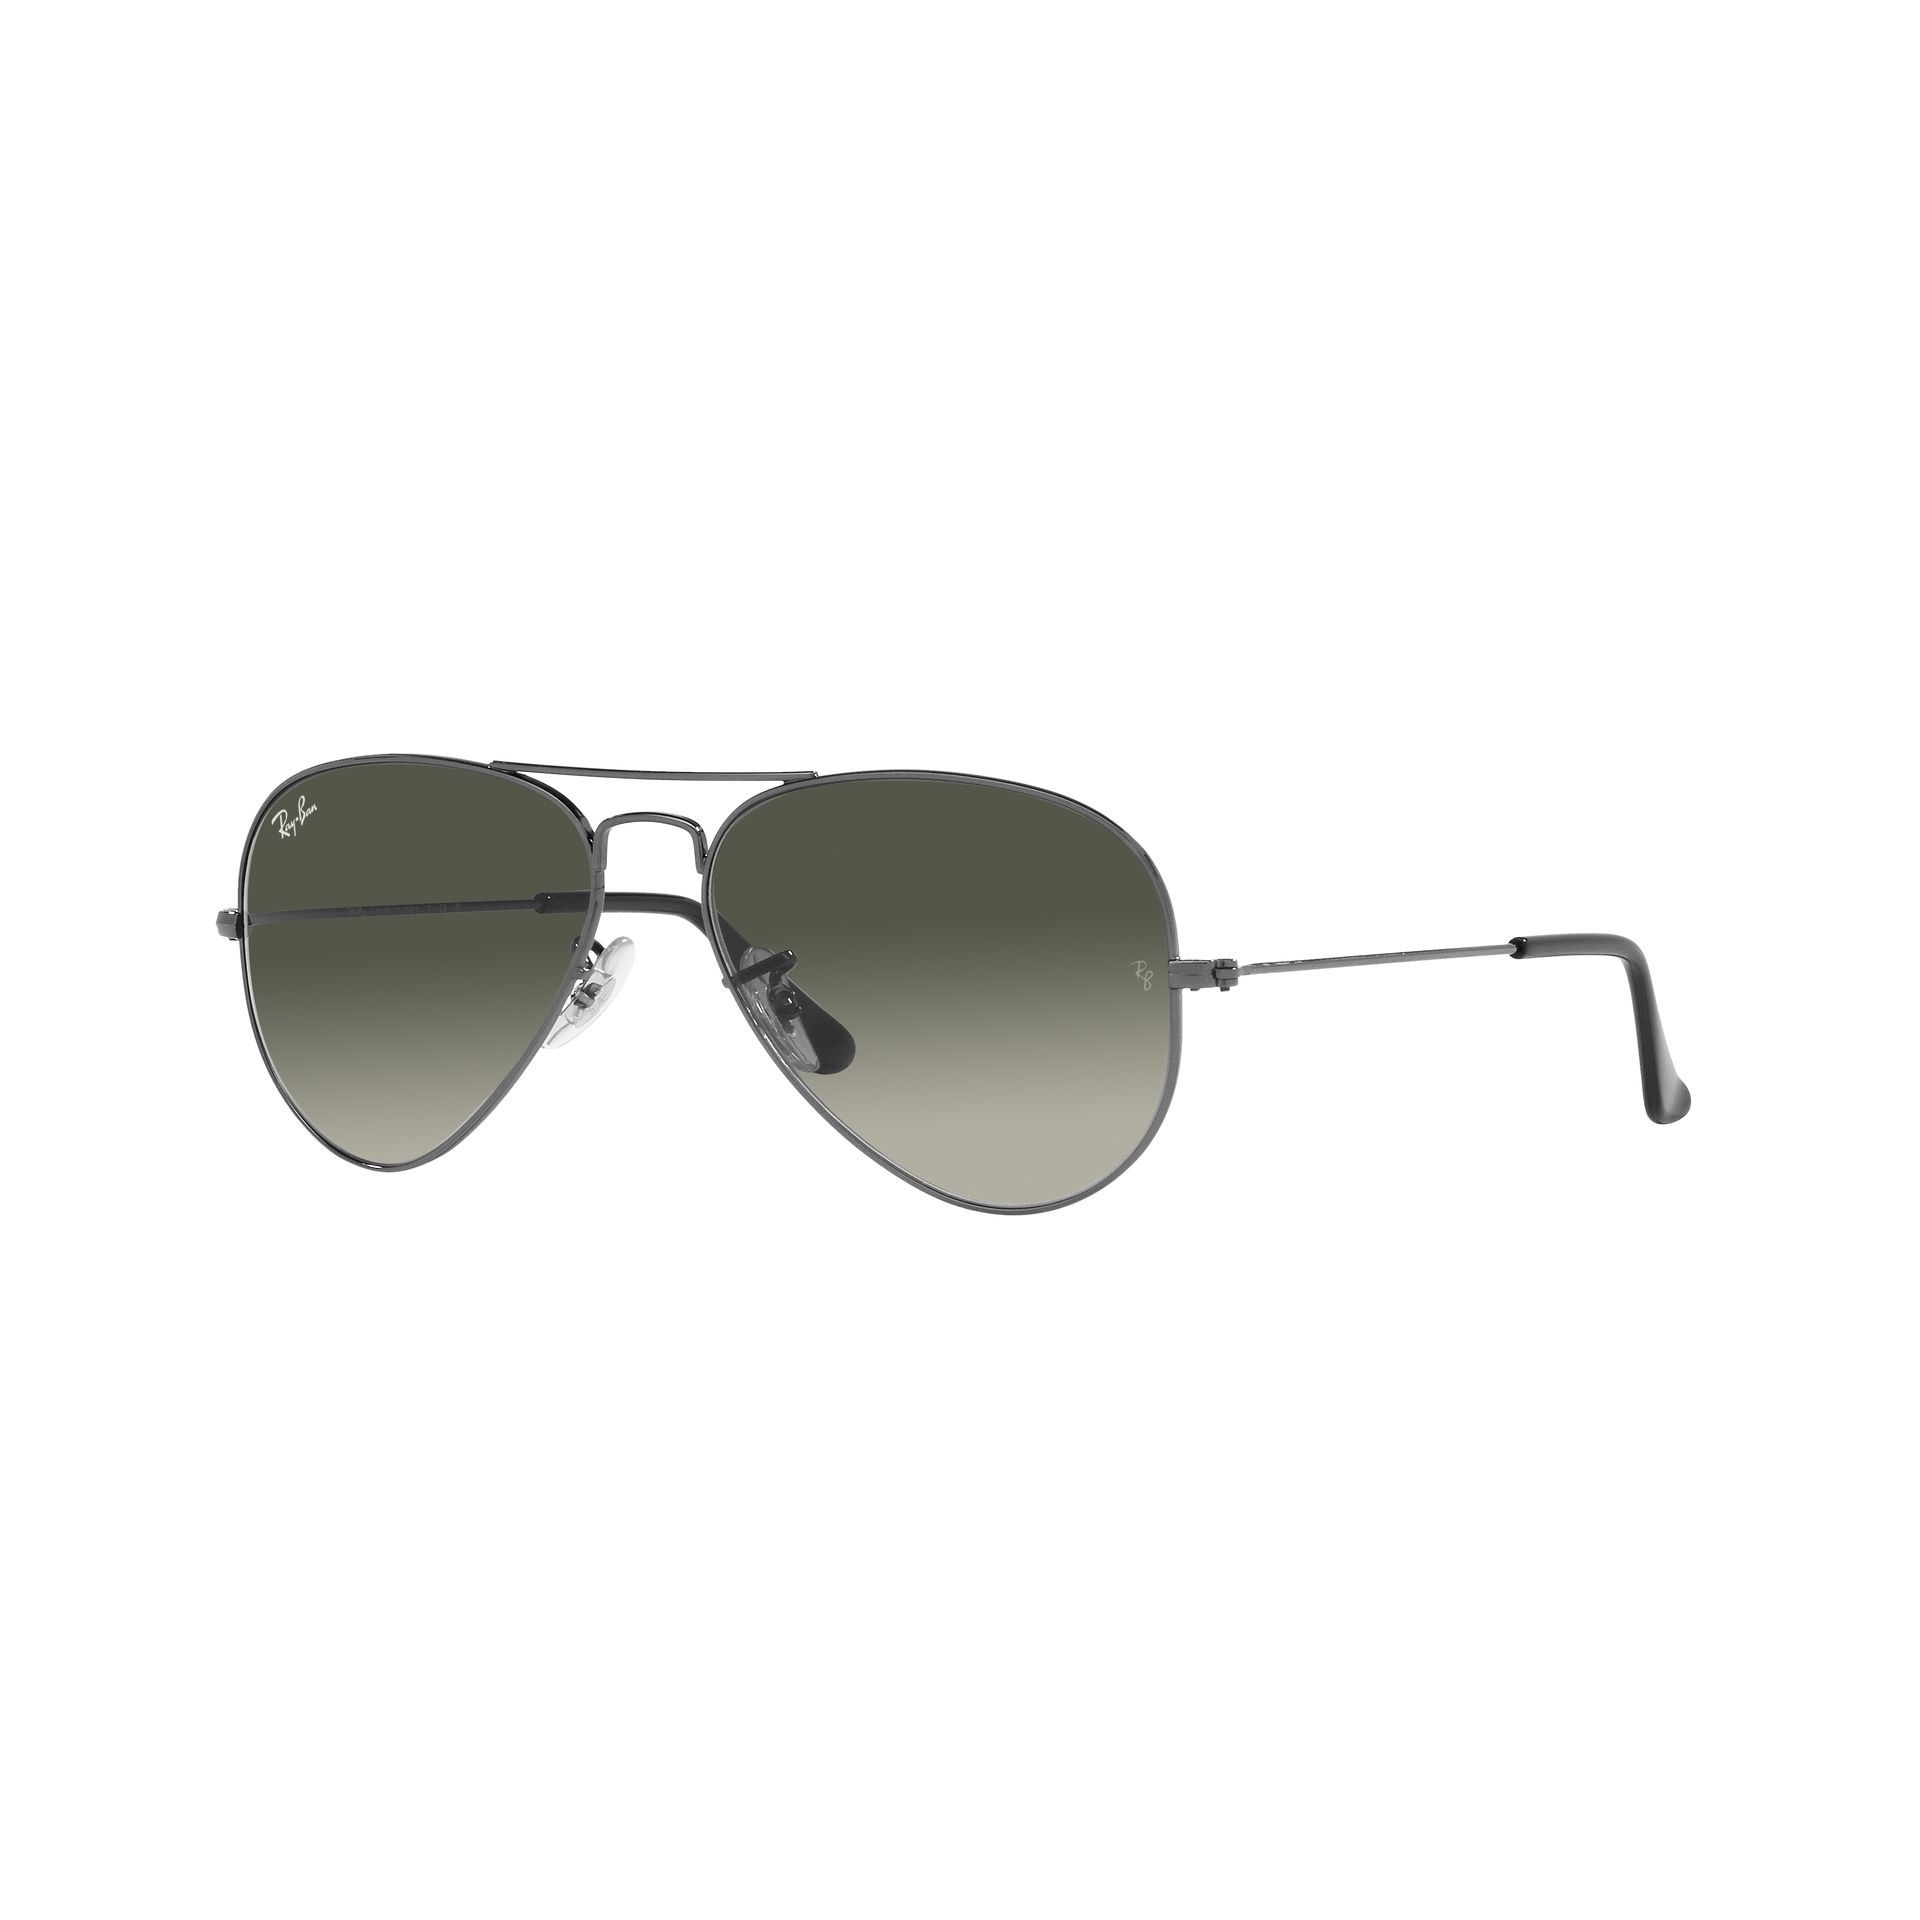 Aviator   Sunglasses RB3025 004 71 - size 58